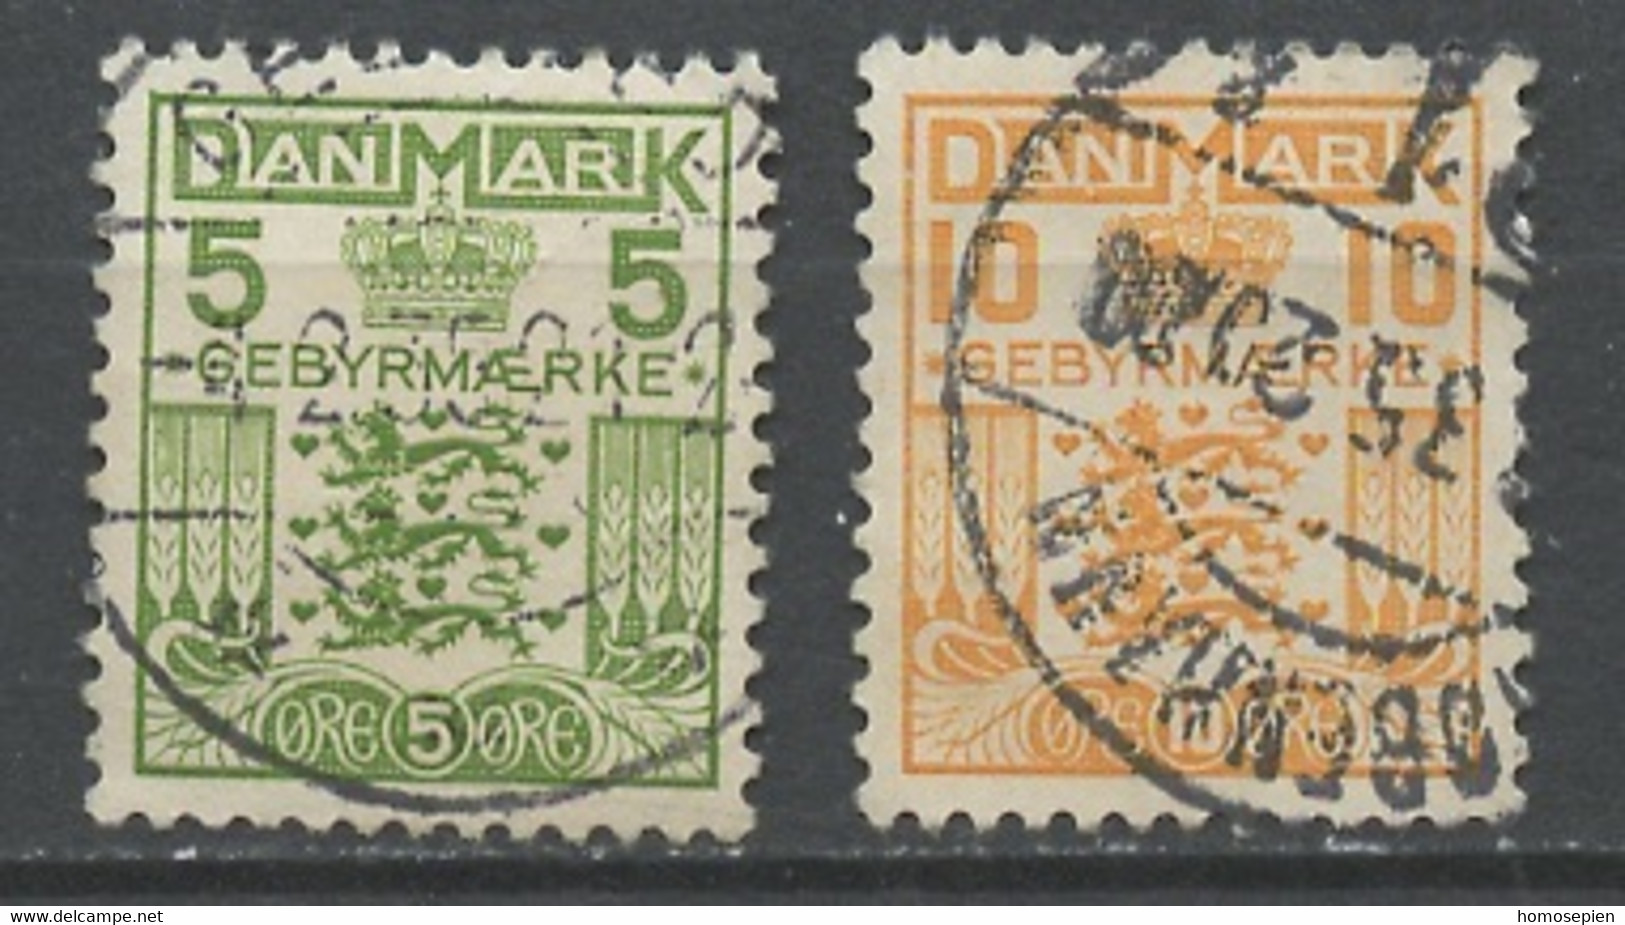 Danemark - Dänemark - Denmark Taxe 1934-53 Y&T N°T34 à 35 - Michel N°P17 à 18 (o) - Armoirie - Port Dû (Taxe)